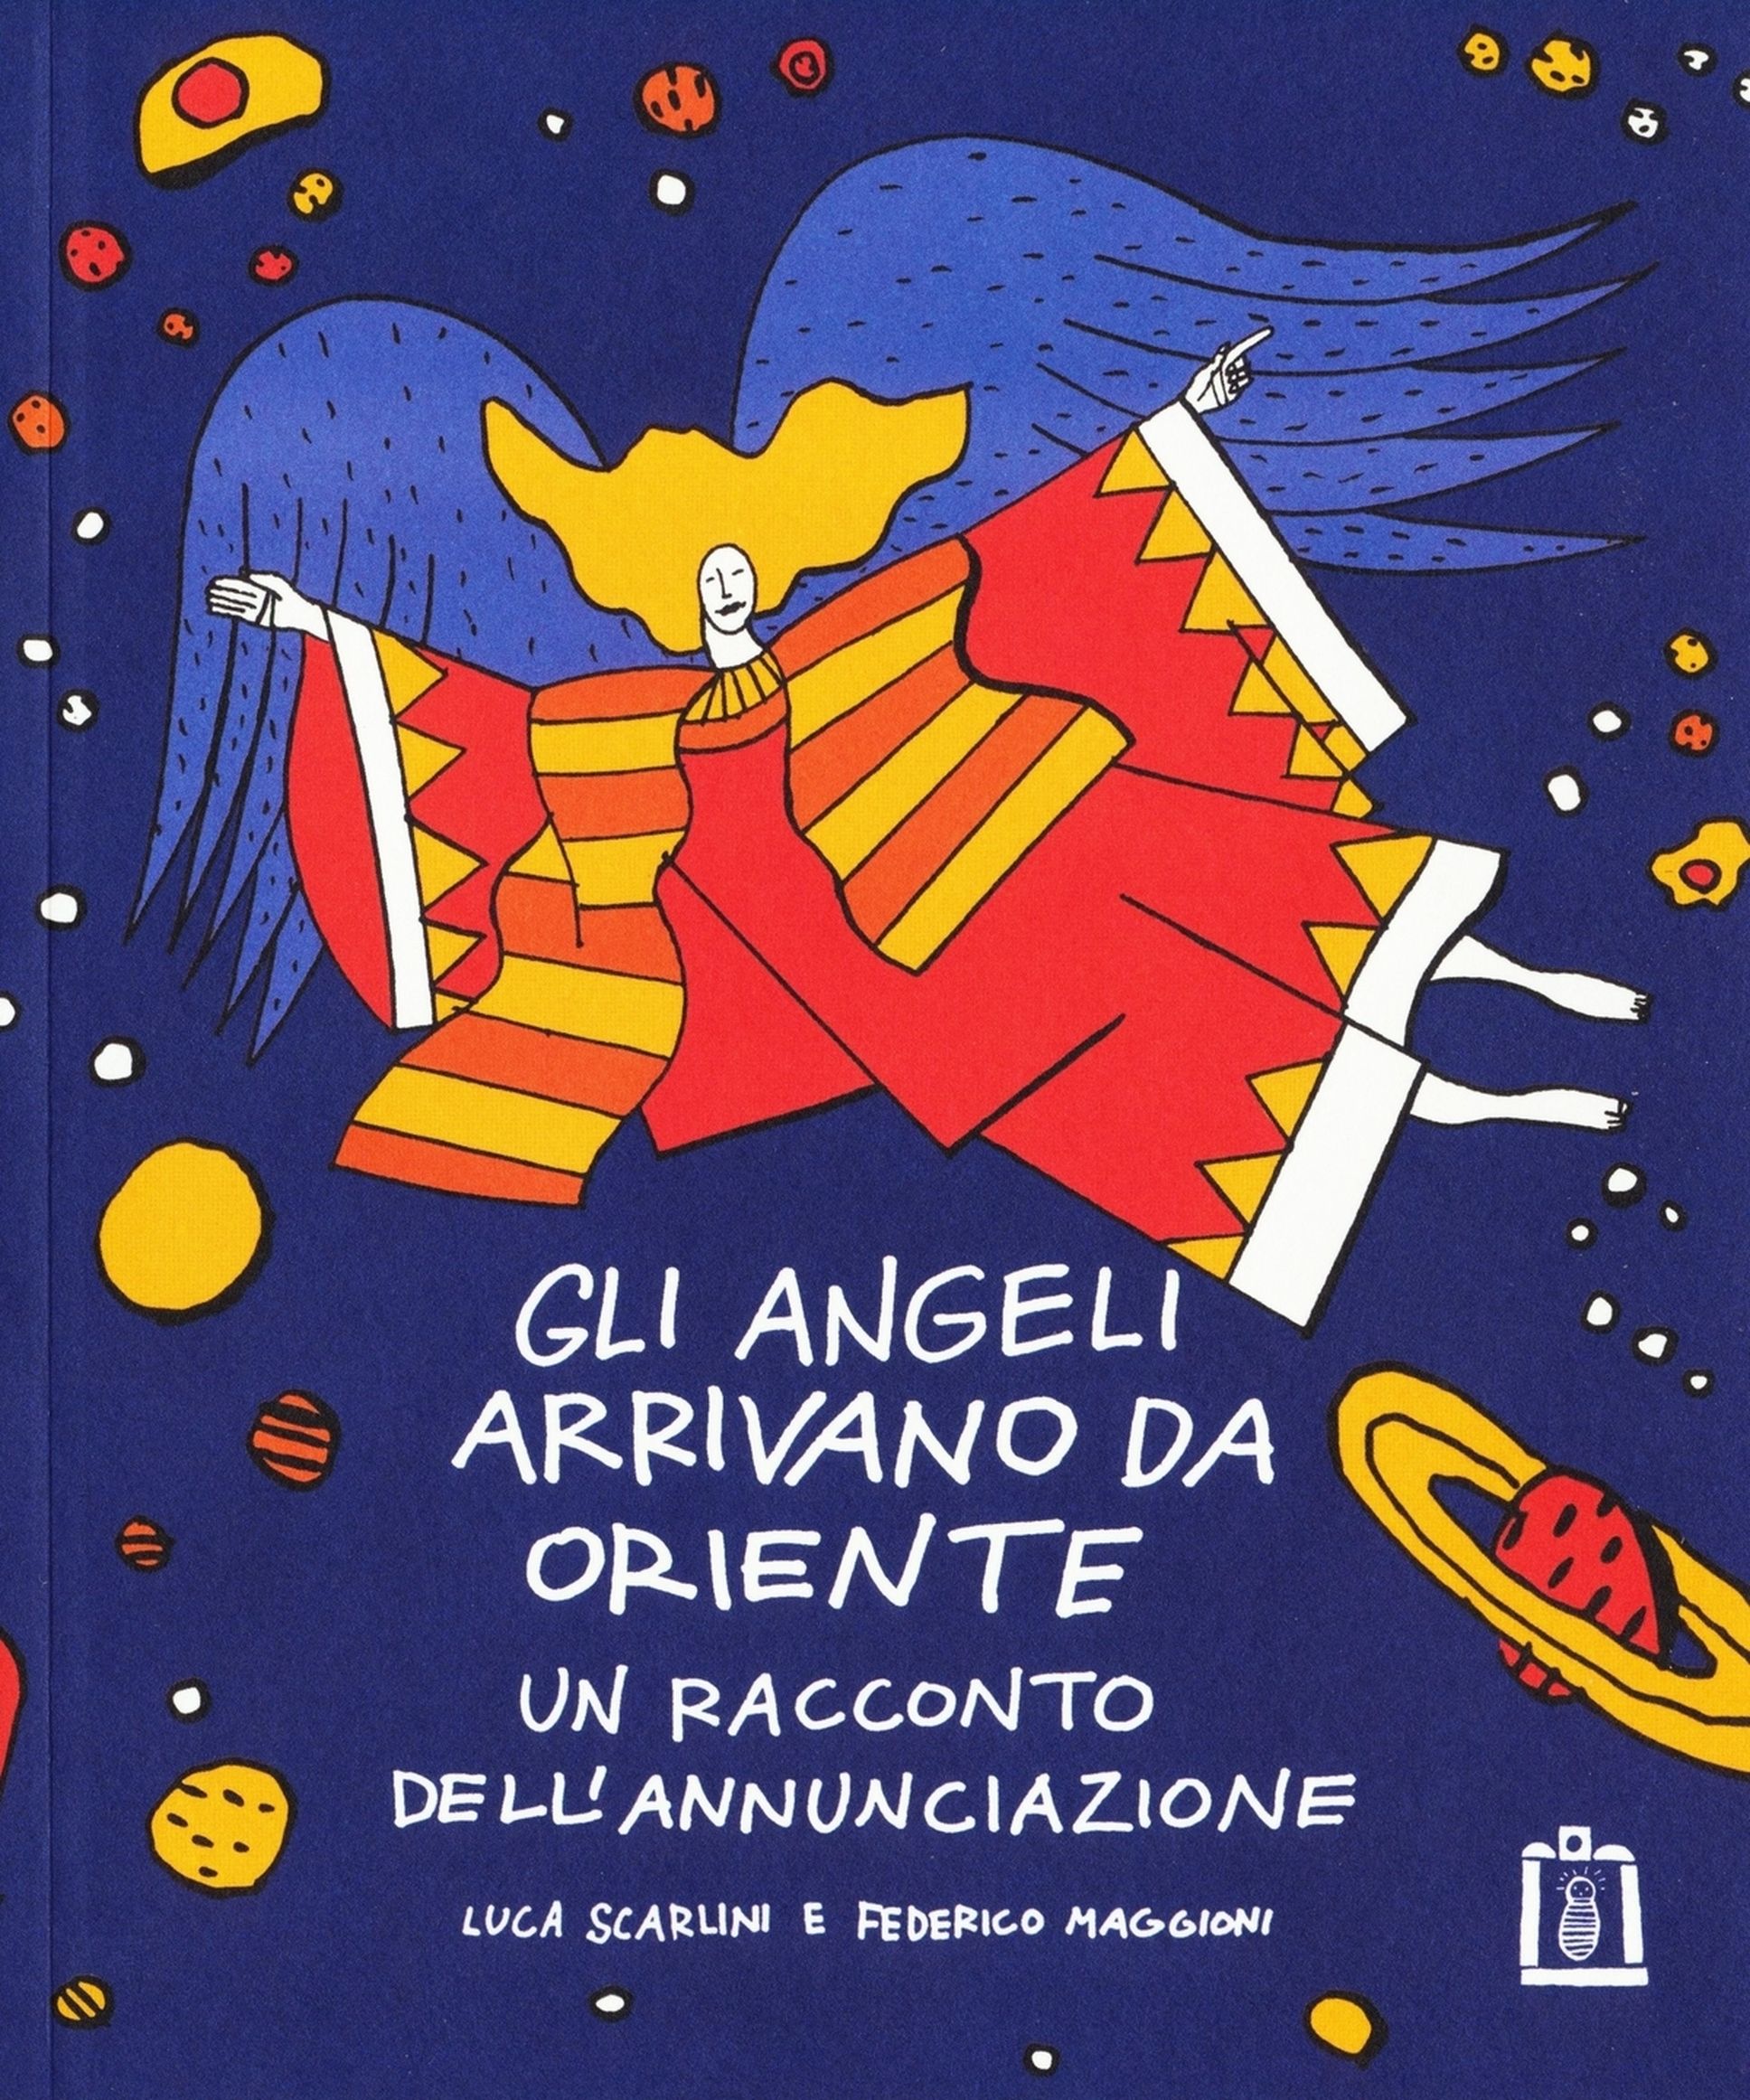 Gli angeli arrivano da Oriente, Luca Scarlini e Federico Maggioni